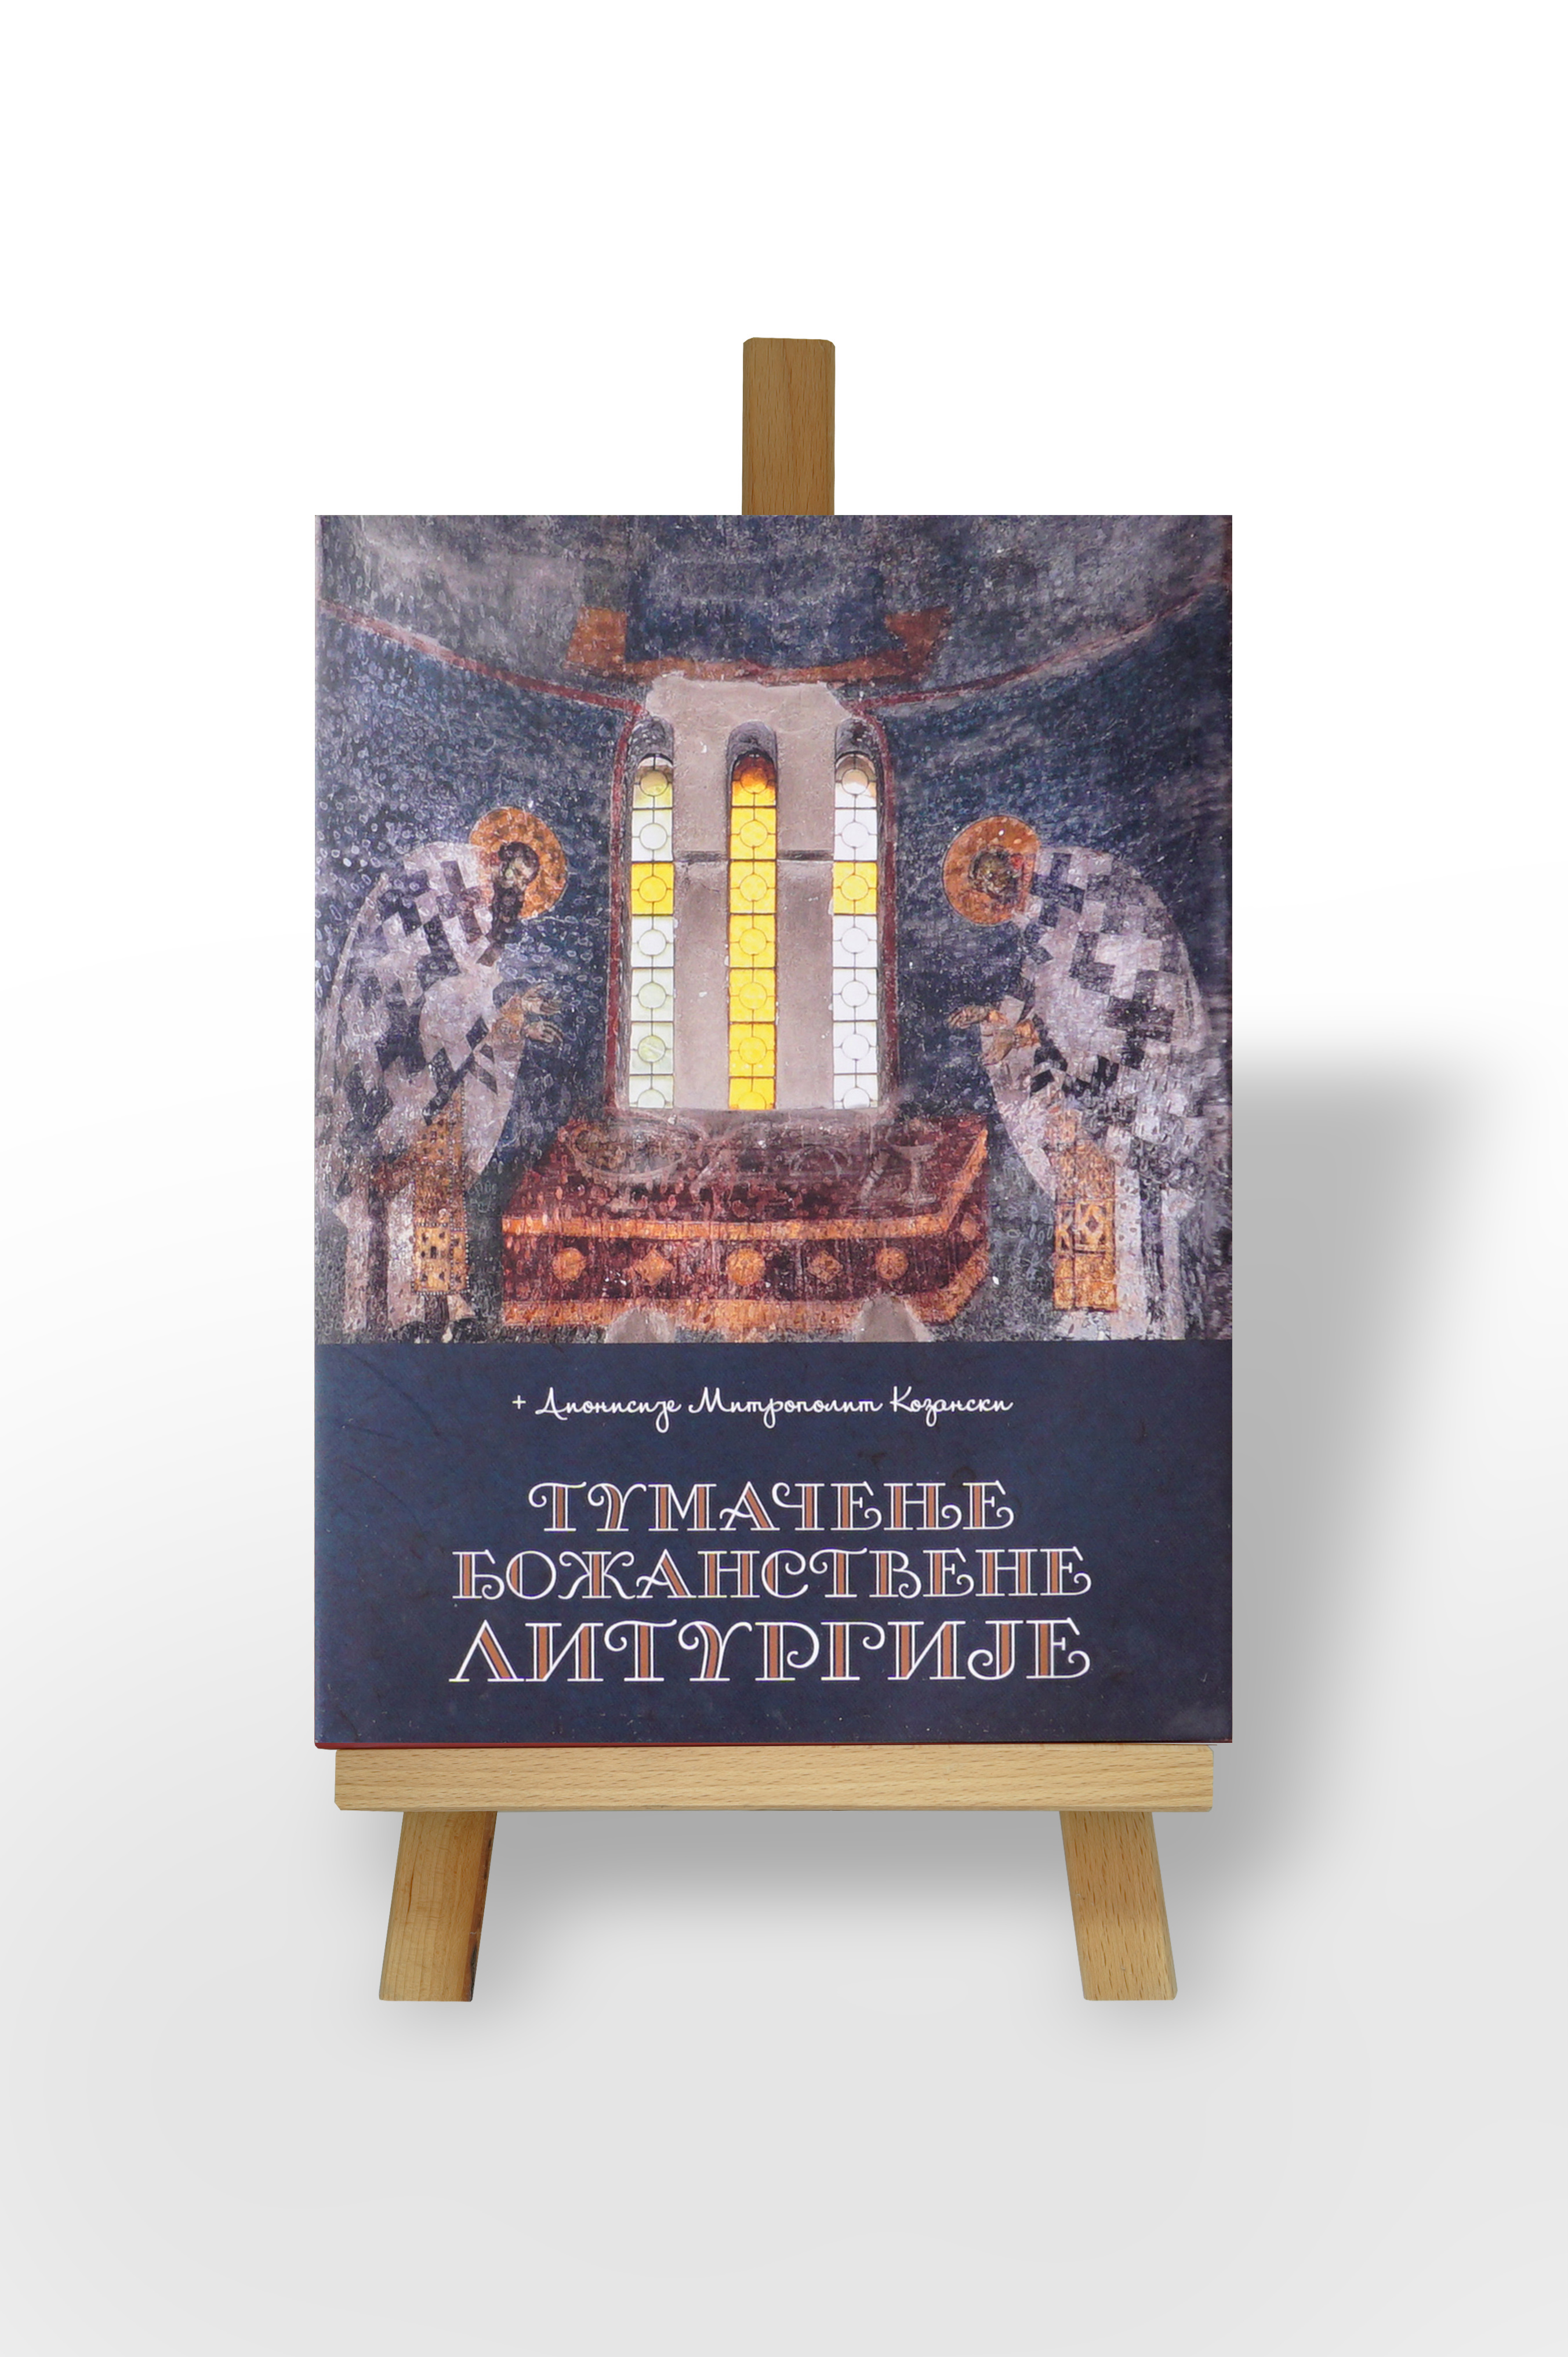 Tumačenje Božanstvene Liturgije – Dionisije Mitropolit Kazanski